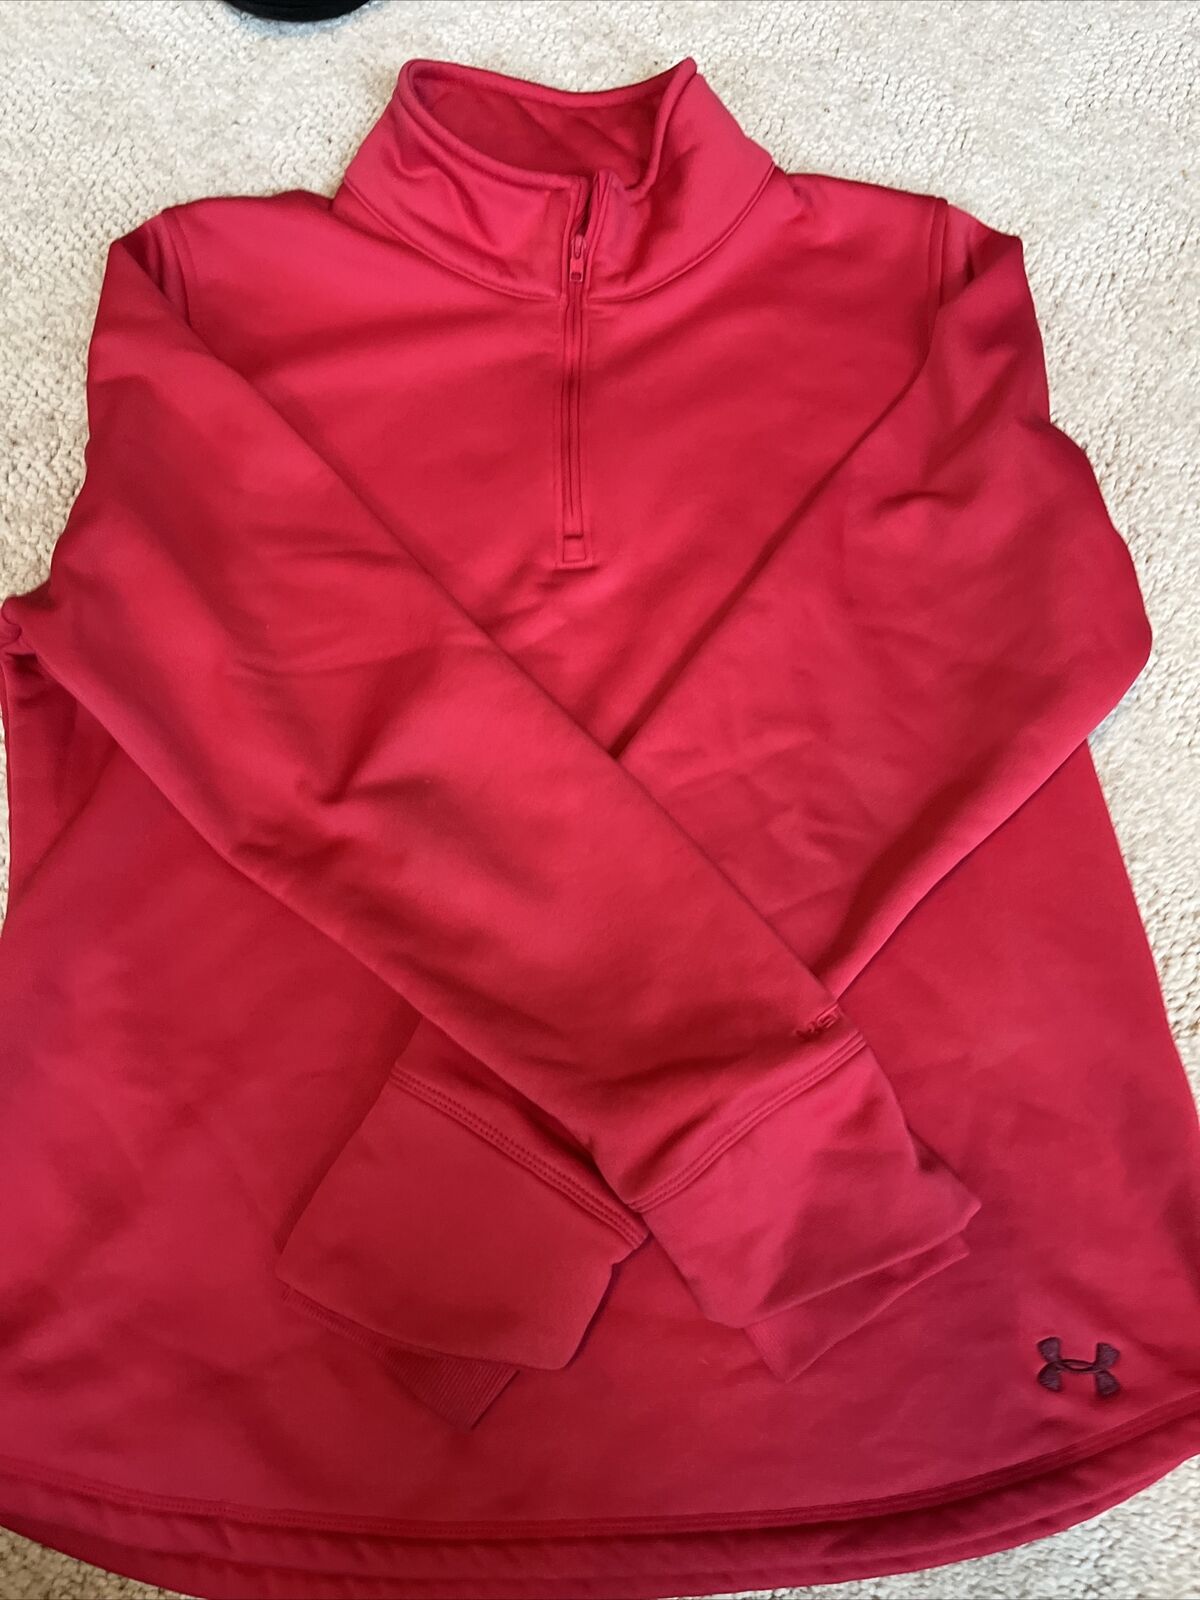 UNDER ARMOUR STORM 1/4 Zip Pink Sweatshirt fleece… - image 1